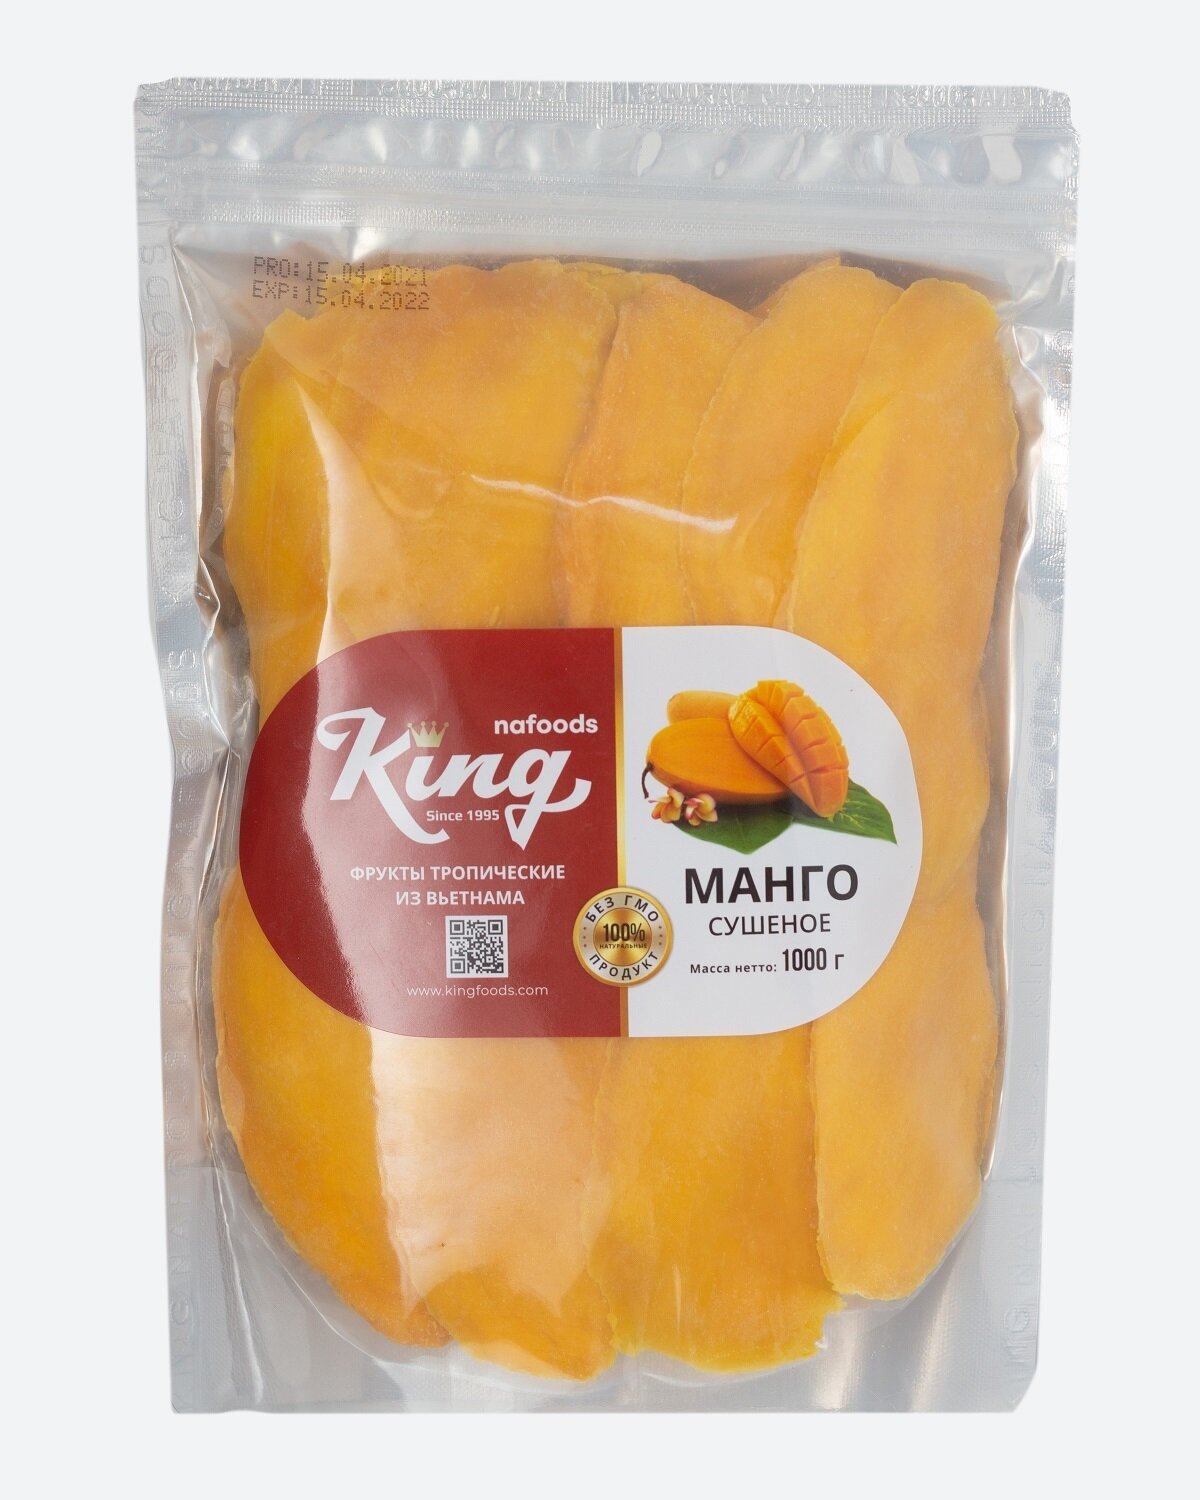 Сушеное манго "King" 1кг.